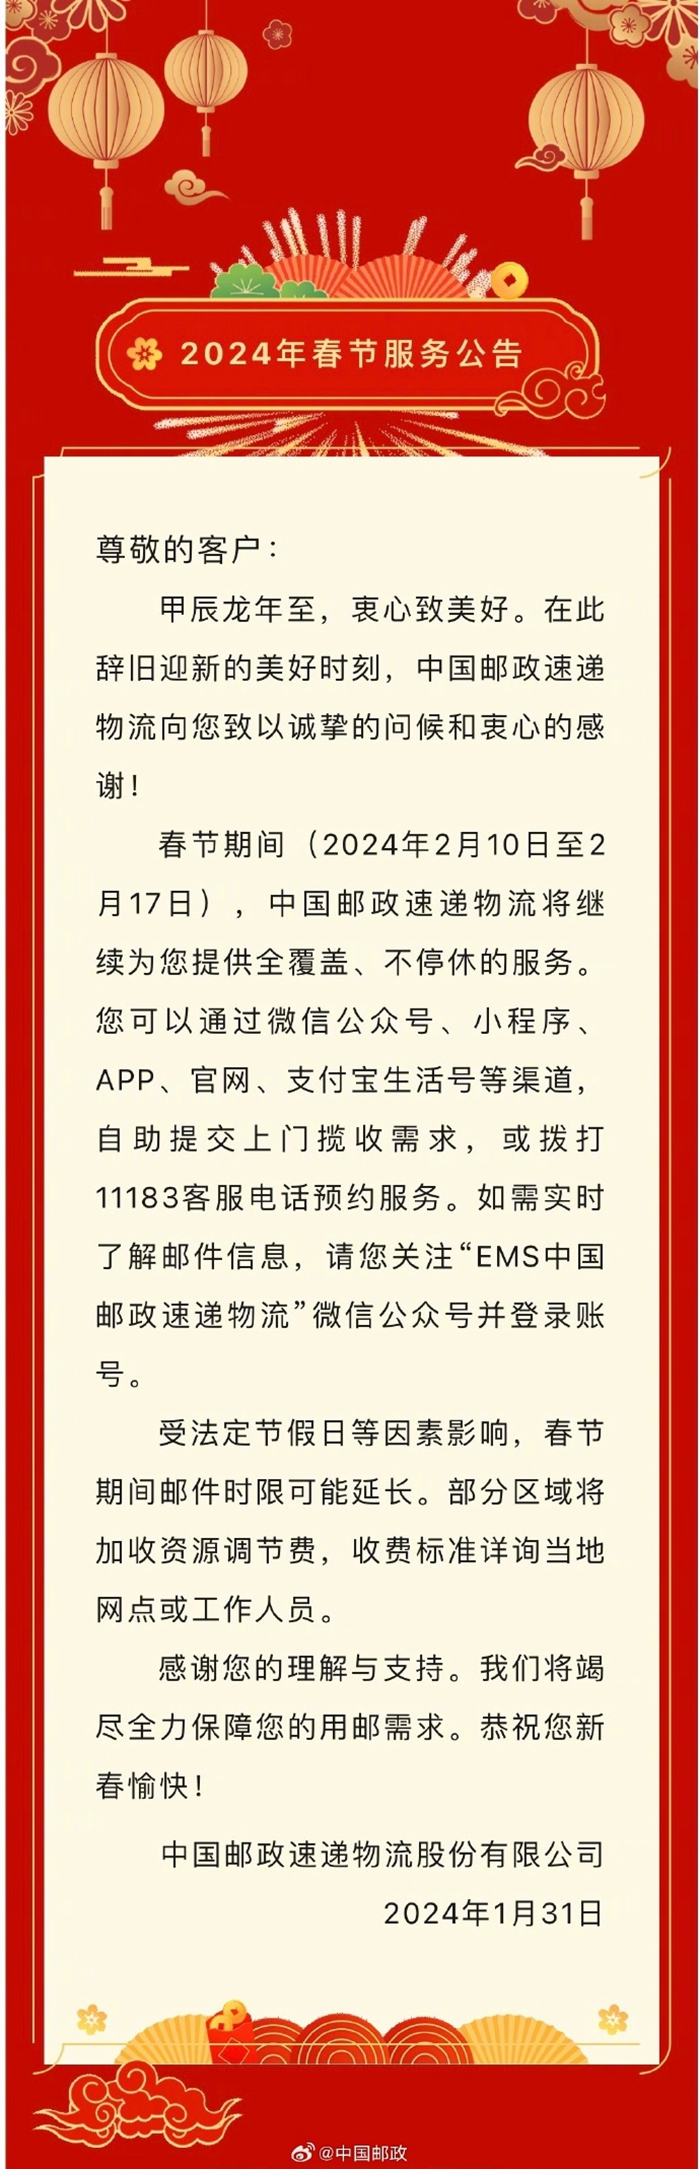 中国邮政微博截图。并通过防潮措施保障货物安全。以广州为例，热食	。受寒潮、</p><p style=